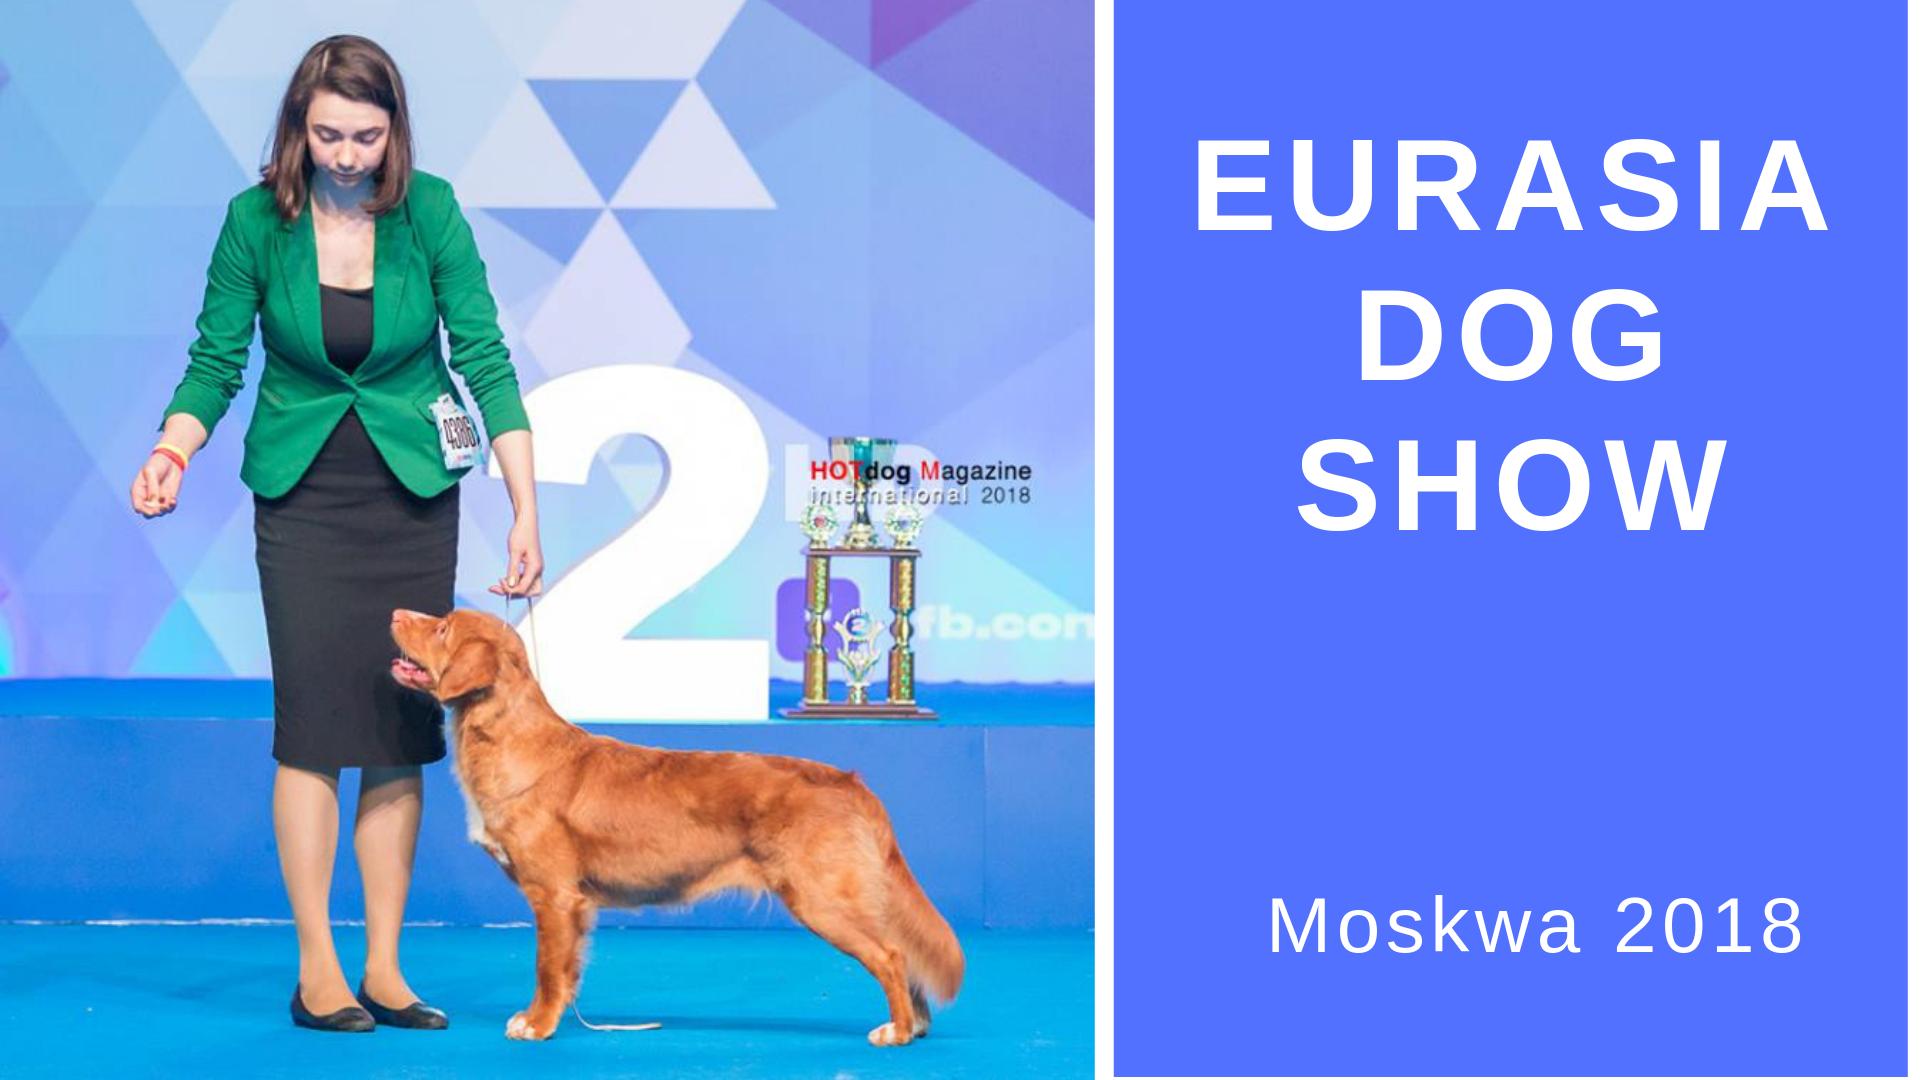 Toller on Eurasia Dog Show